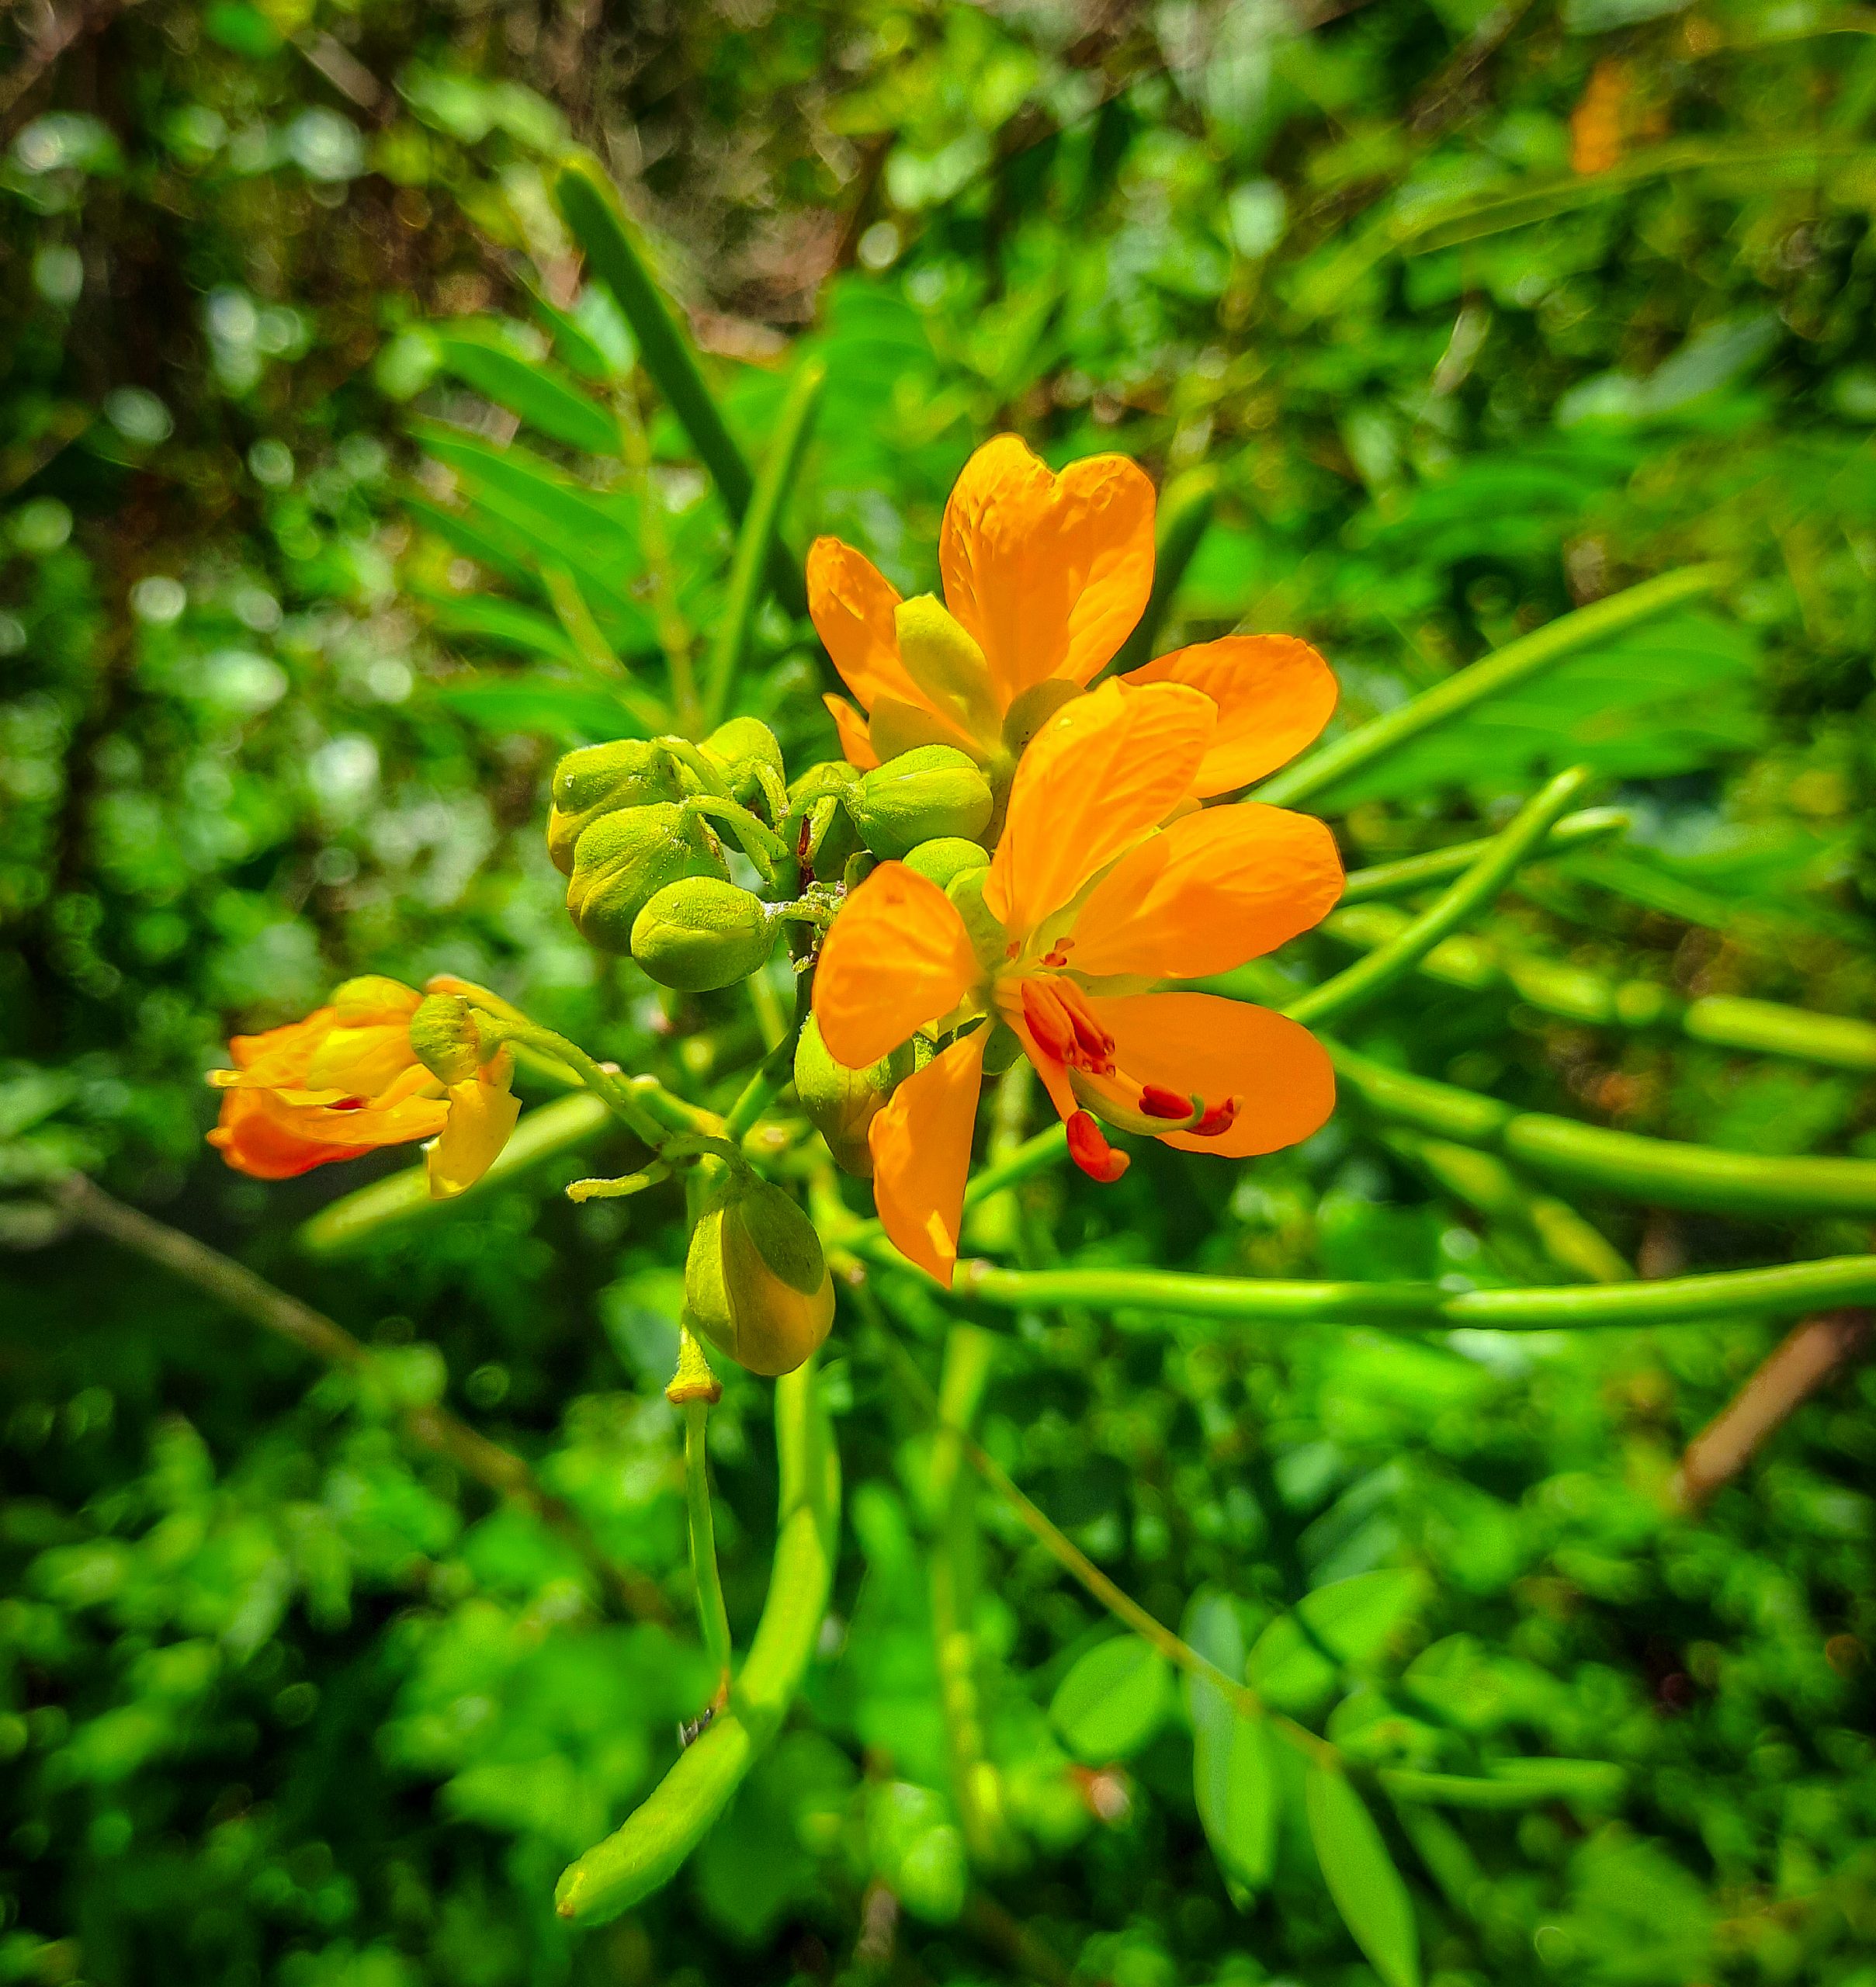 An Orange Flower on Focus